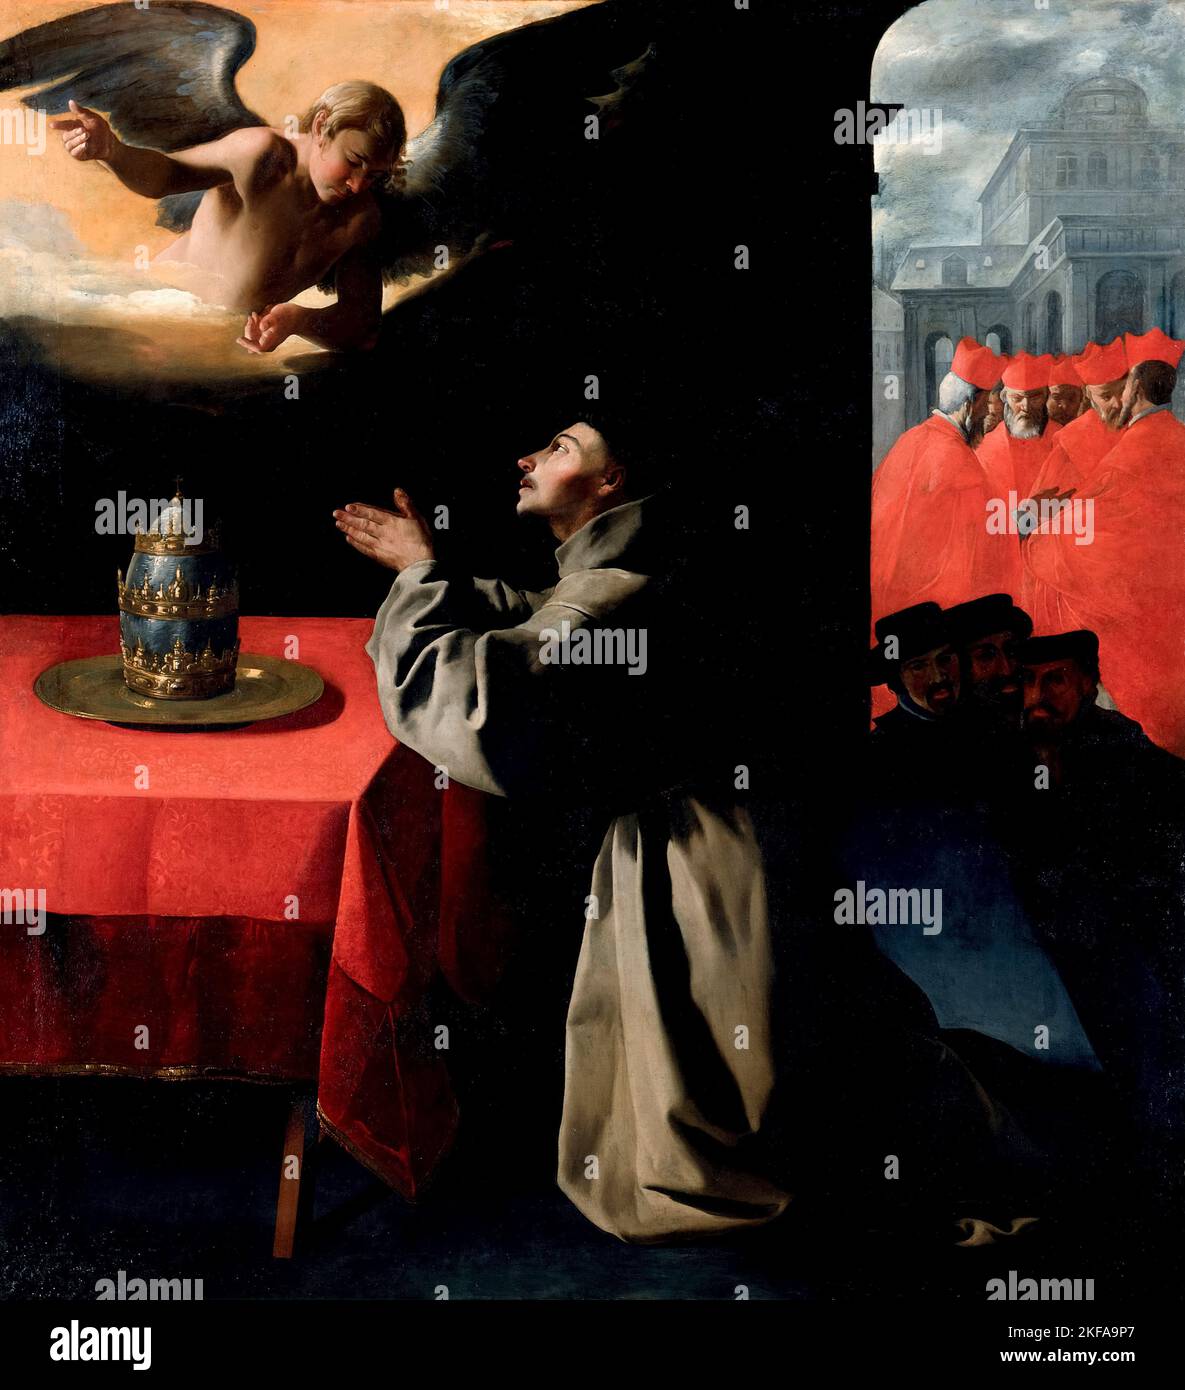 La prière de St Bonaventura sur la sélection du Nouveau Pape, peinture à l'huile sur toile par Francisco de Zurbarán, 1628-1629 Banque D'Images